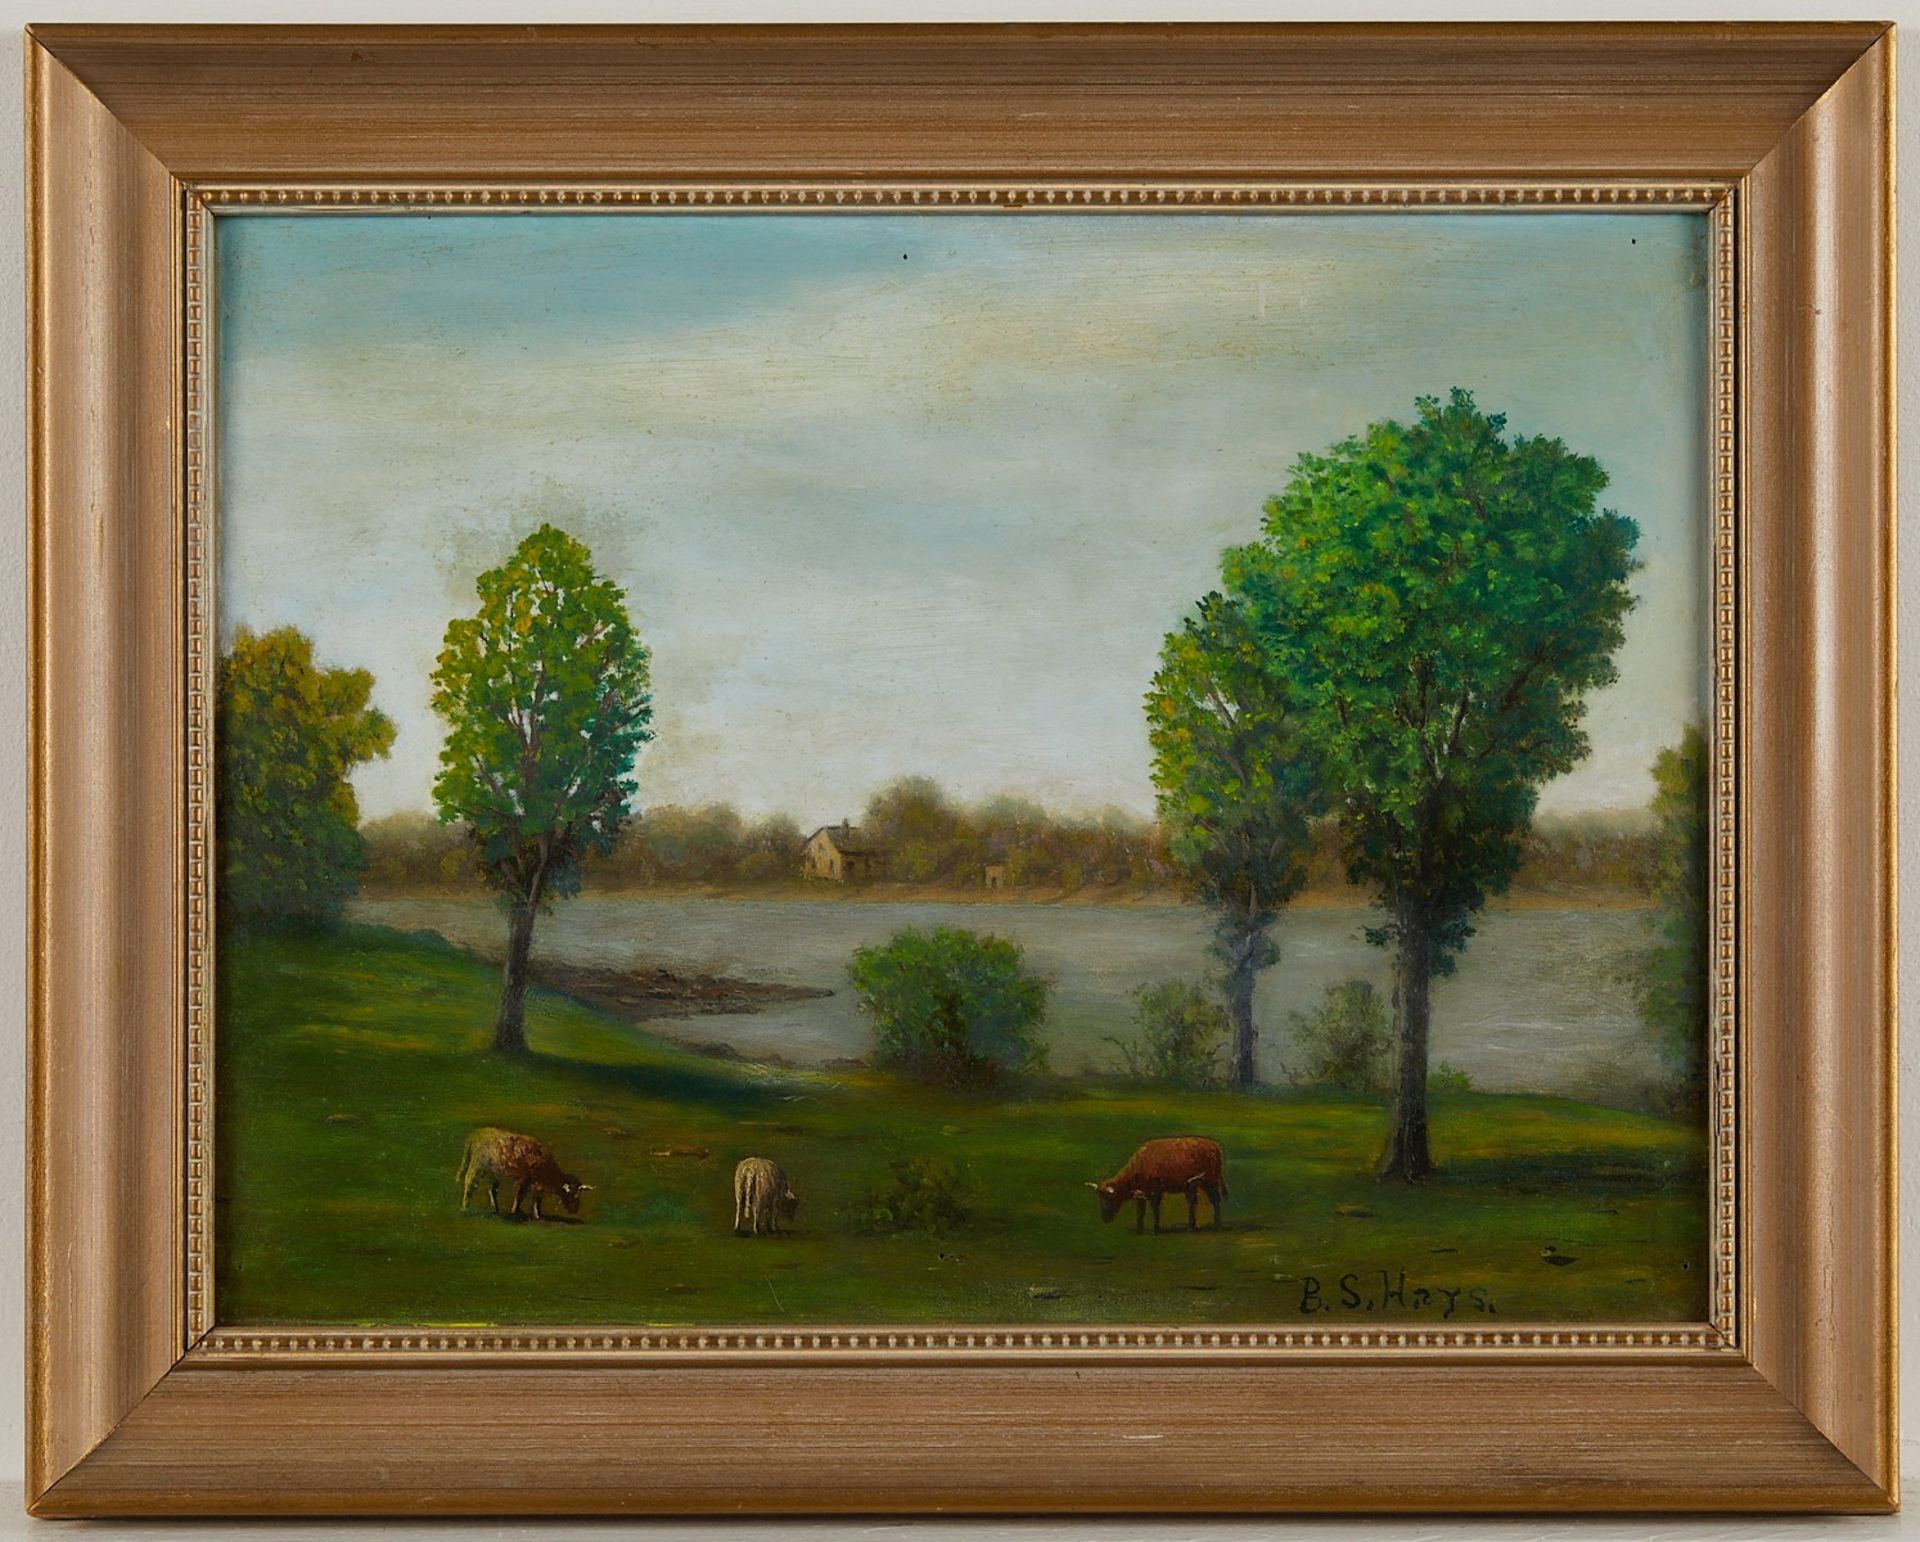 B.S. Hays Landscape with Cows - Bild 3 aus 7